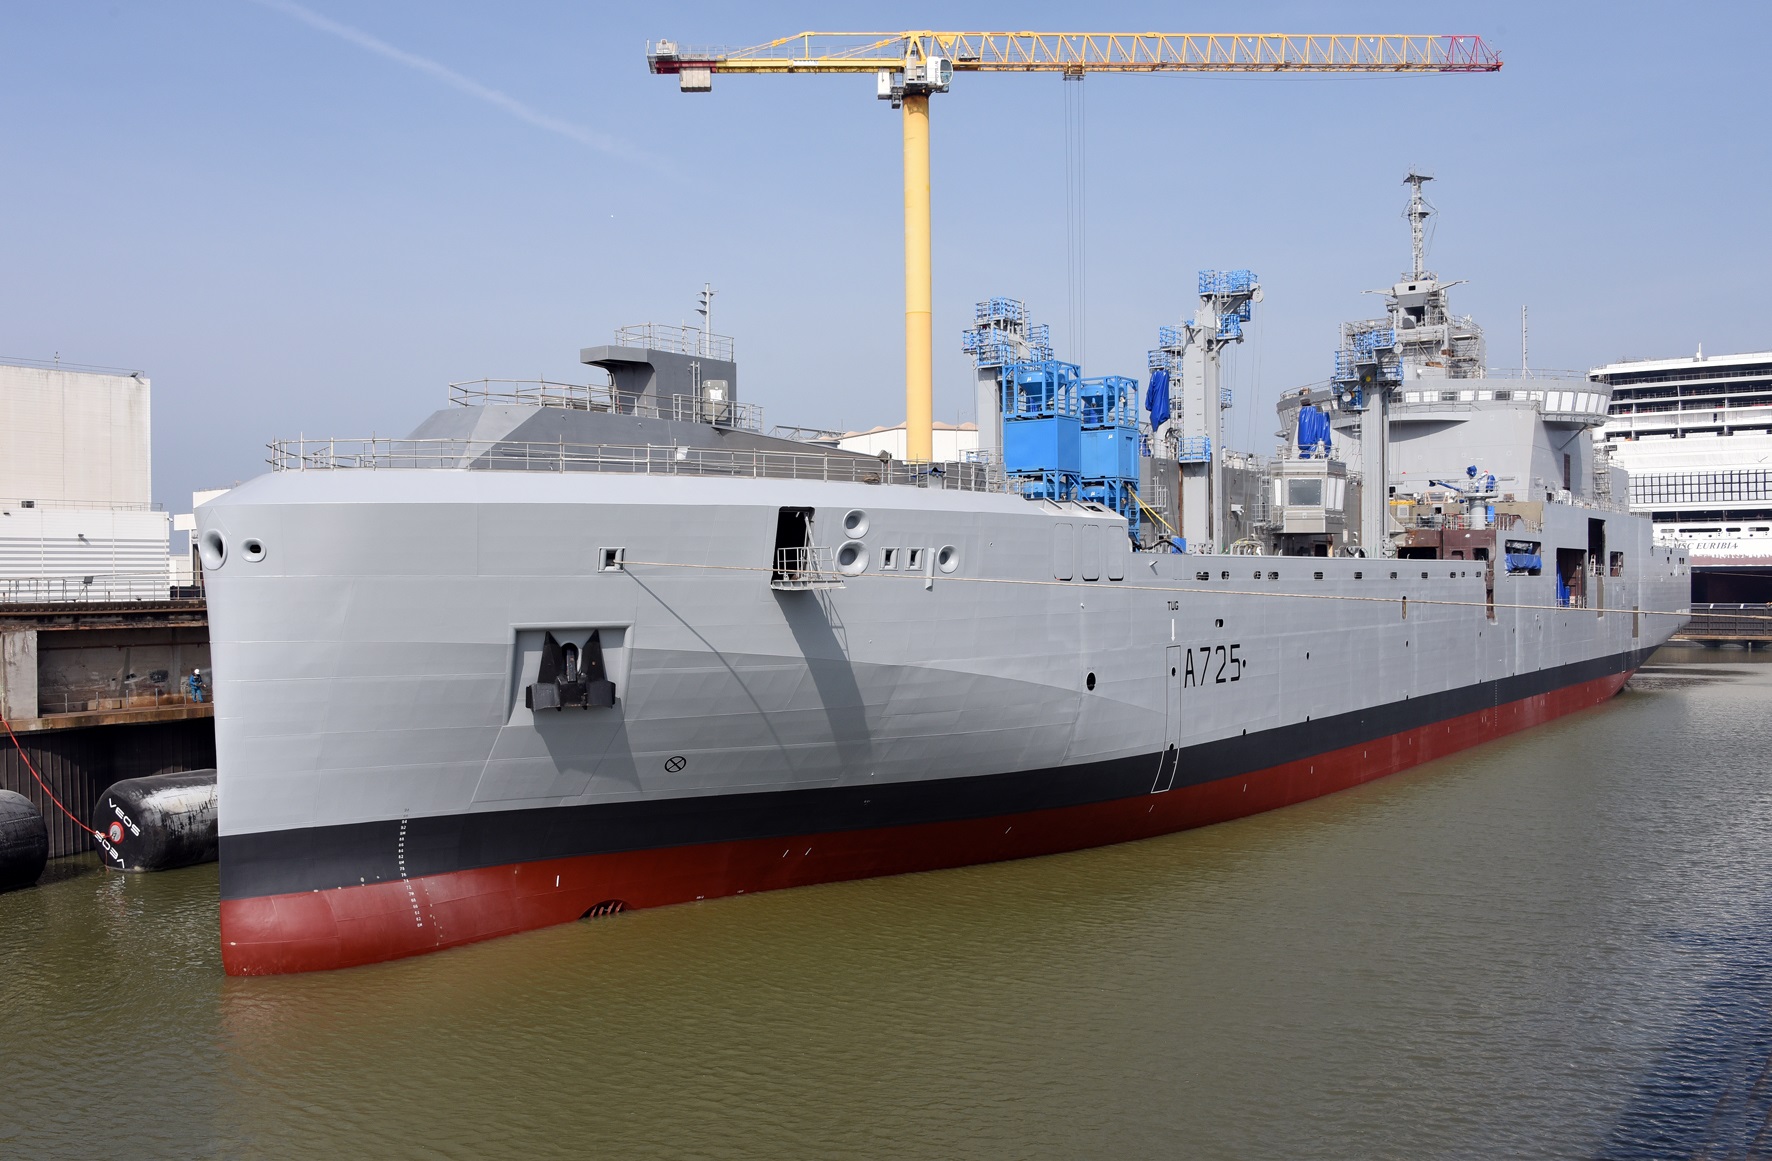 Le premier Bâtiment ravitailleur de forces sera livré à la marine nationale en 2023